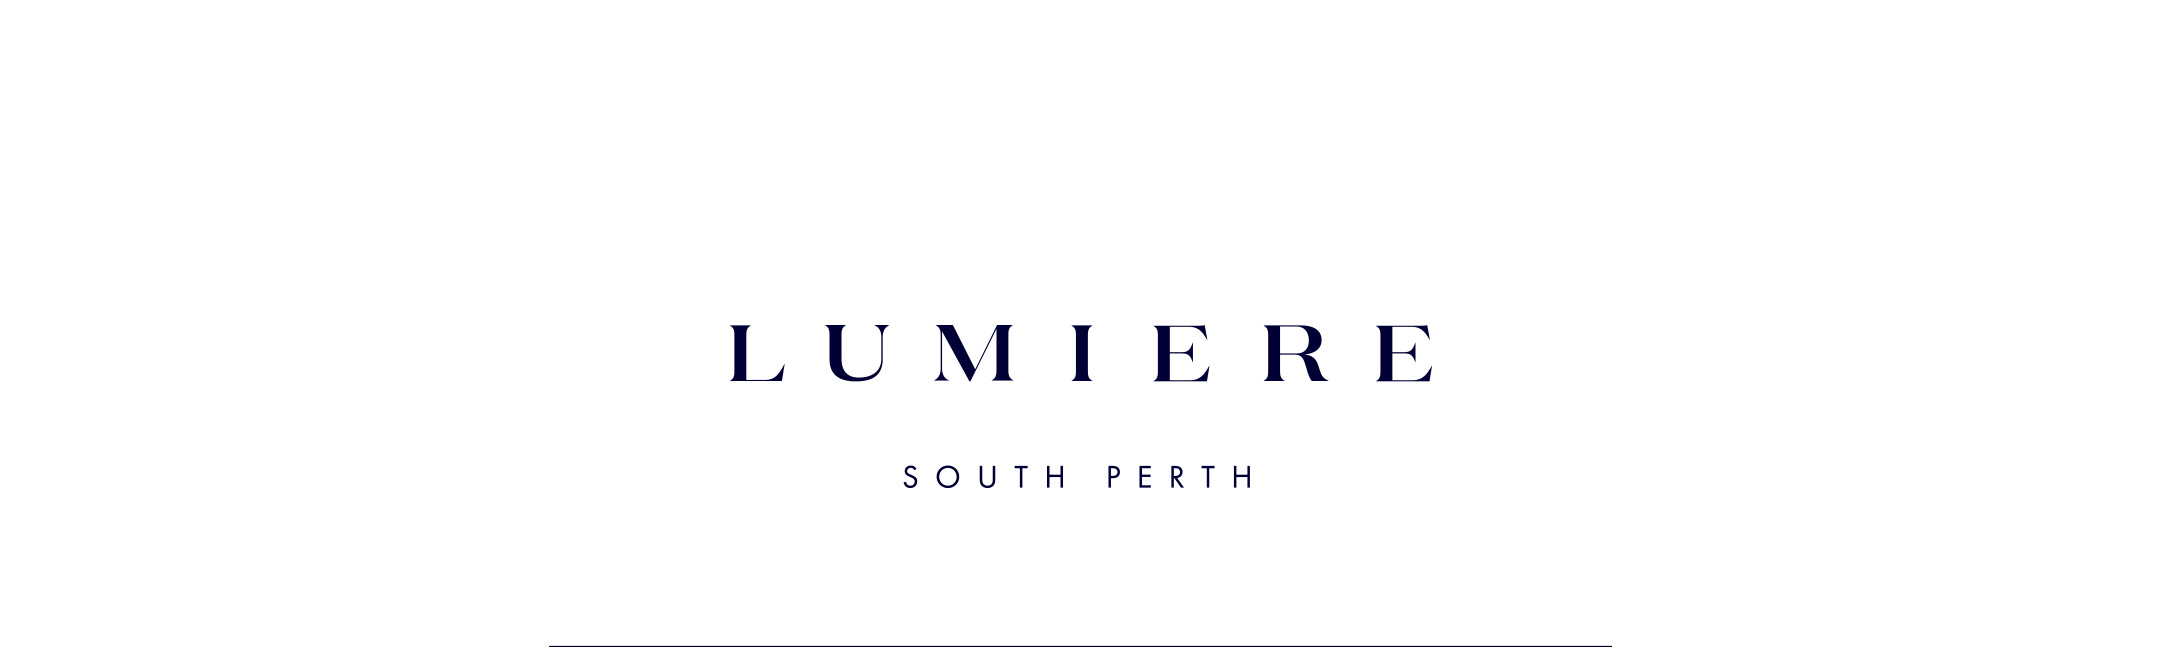 Lumiere South Perth